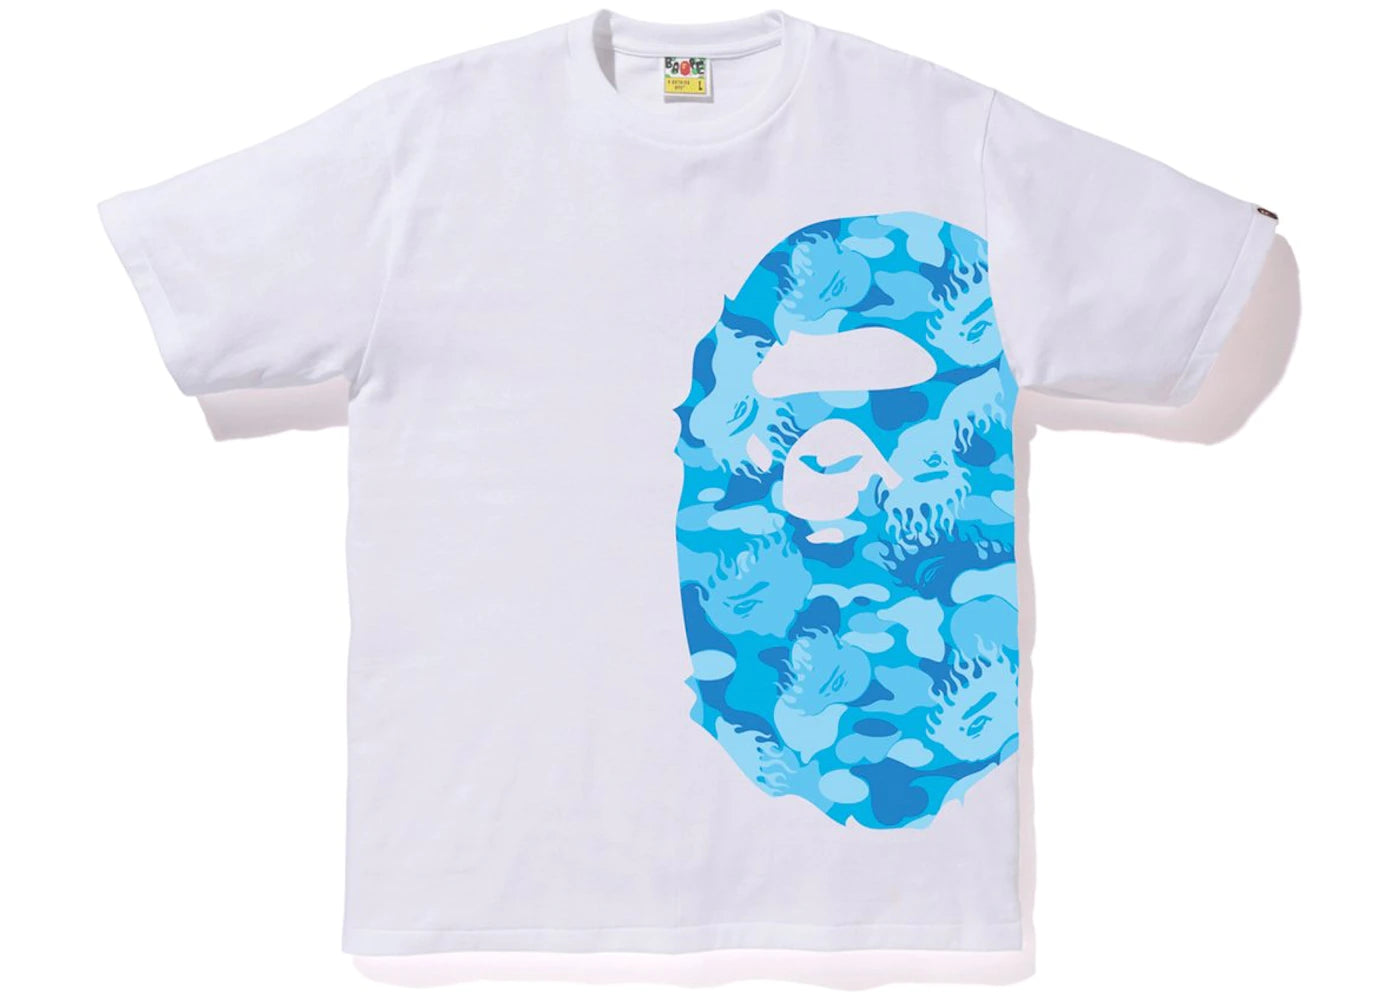 BAPE Fire Camo T-shirt White/Blue